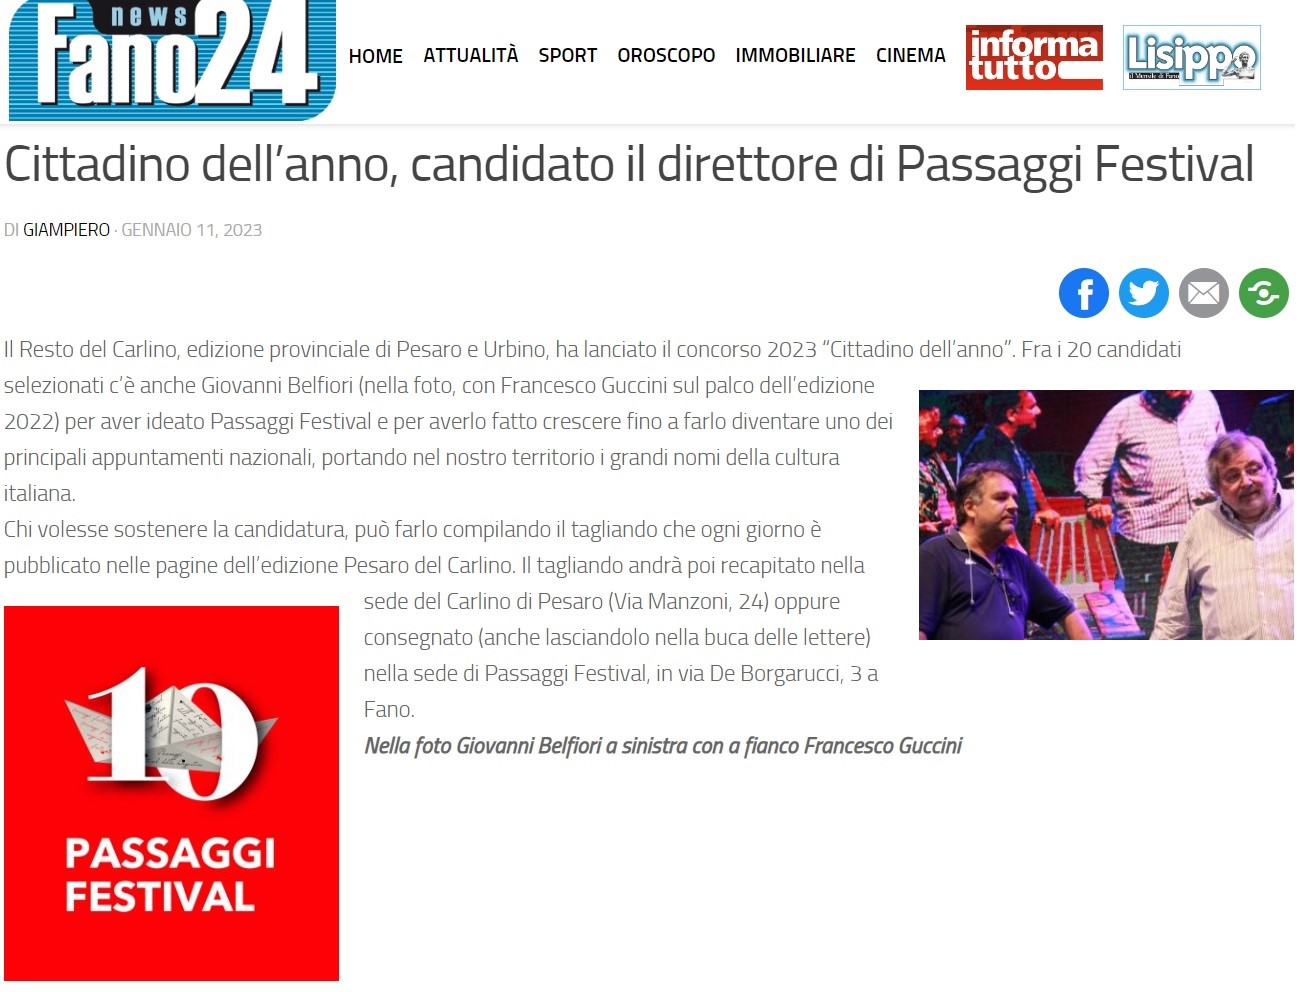 Cittadino_dell_anno_candidato_il_direttore_di_Passaggi_Festival